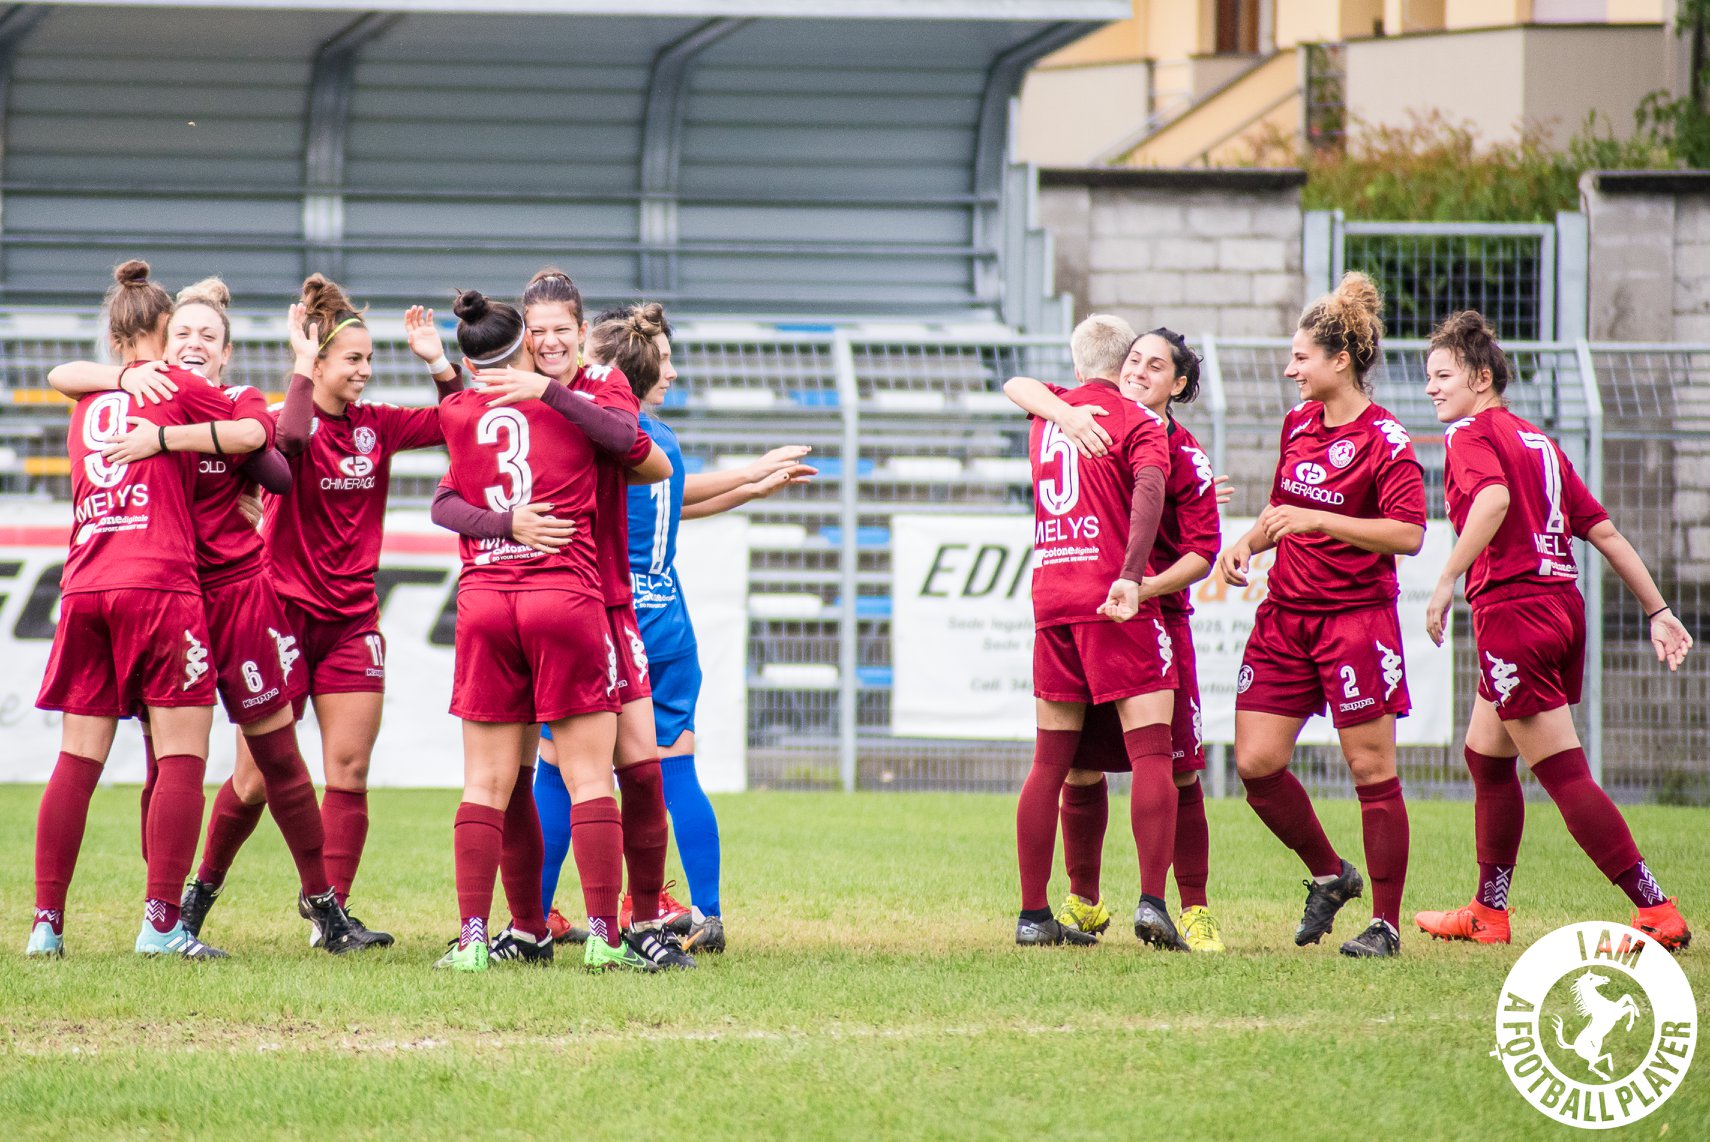 Domenica inizia il Campionato femminile di calcio per le ragazze dell’Arezzo